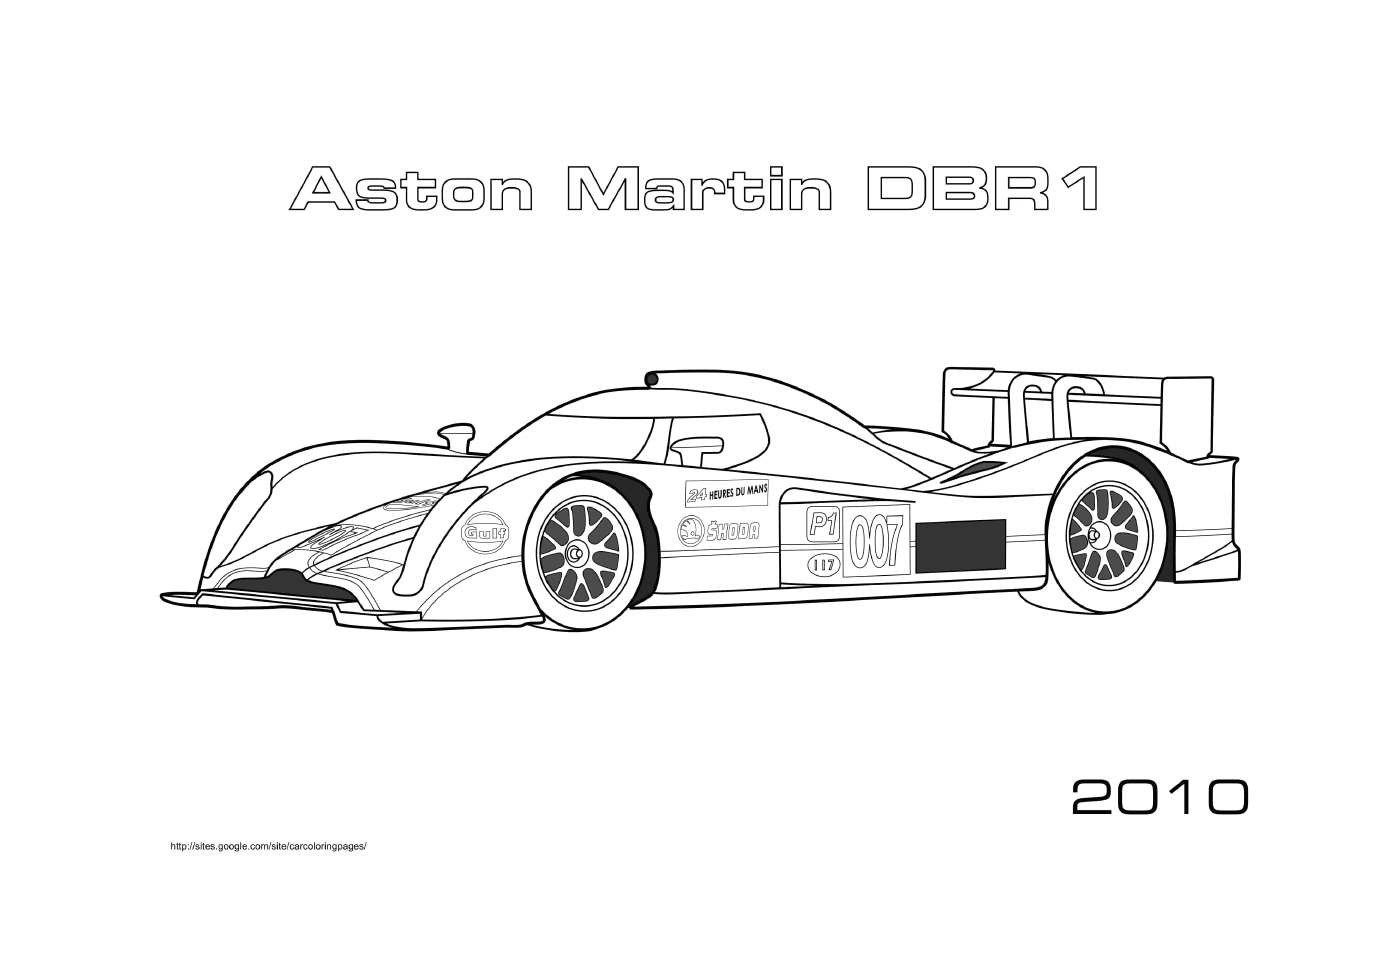  Aston Martin racing car DBR1 2010 